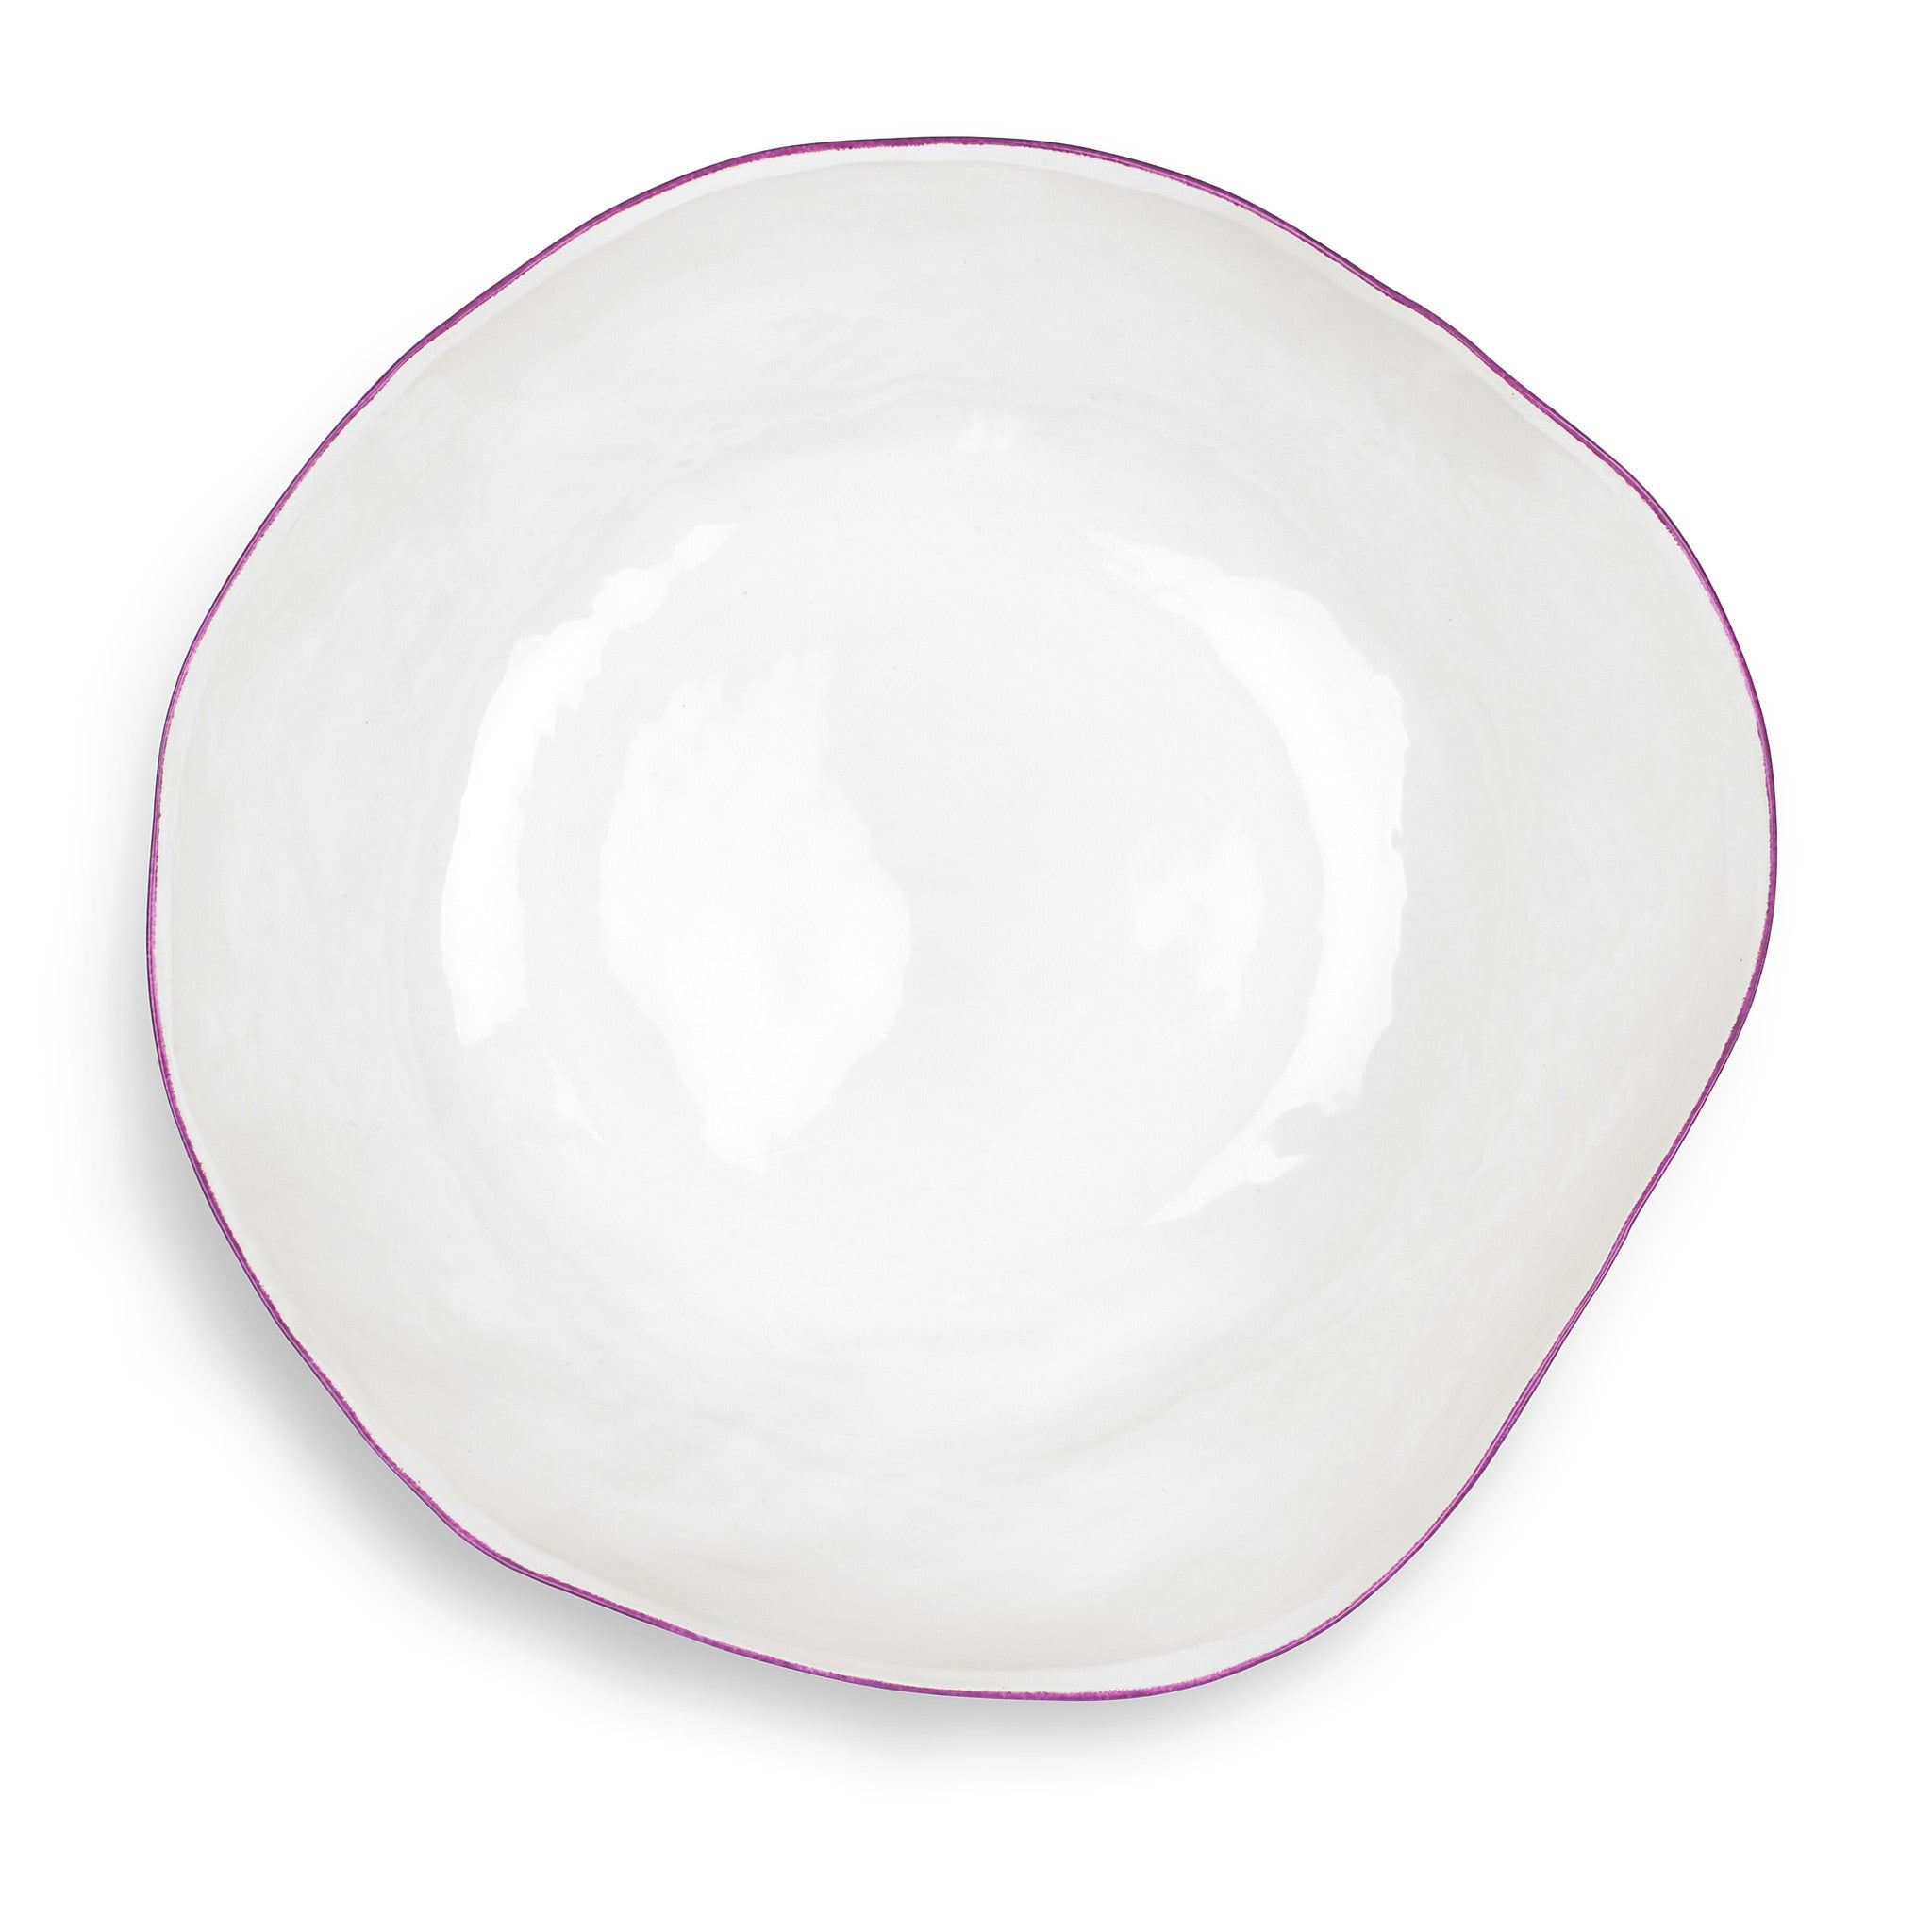 Summerill & Bishop Handmade 43cm Porcelain Extra Large Salad Bowl with Pink Rim